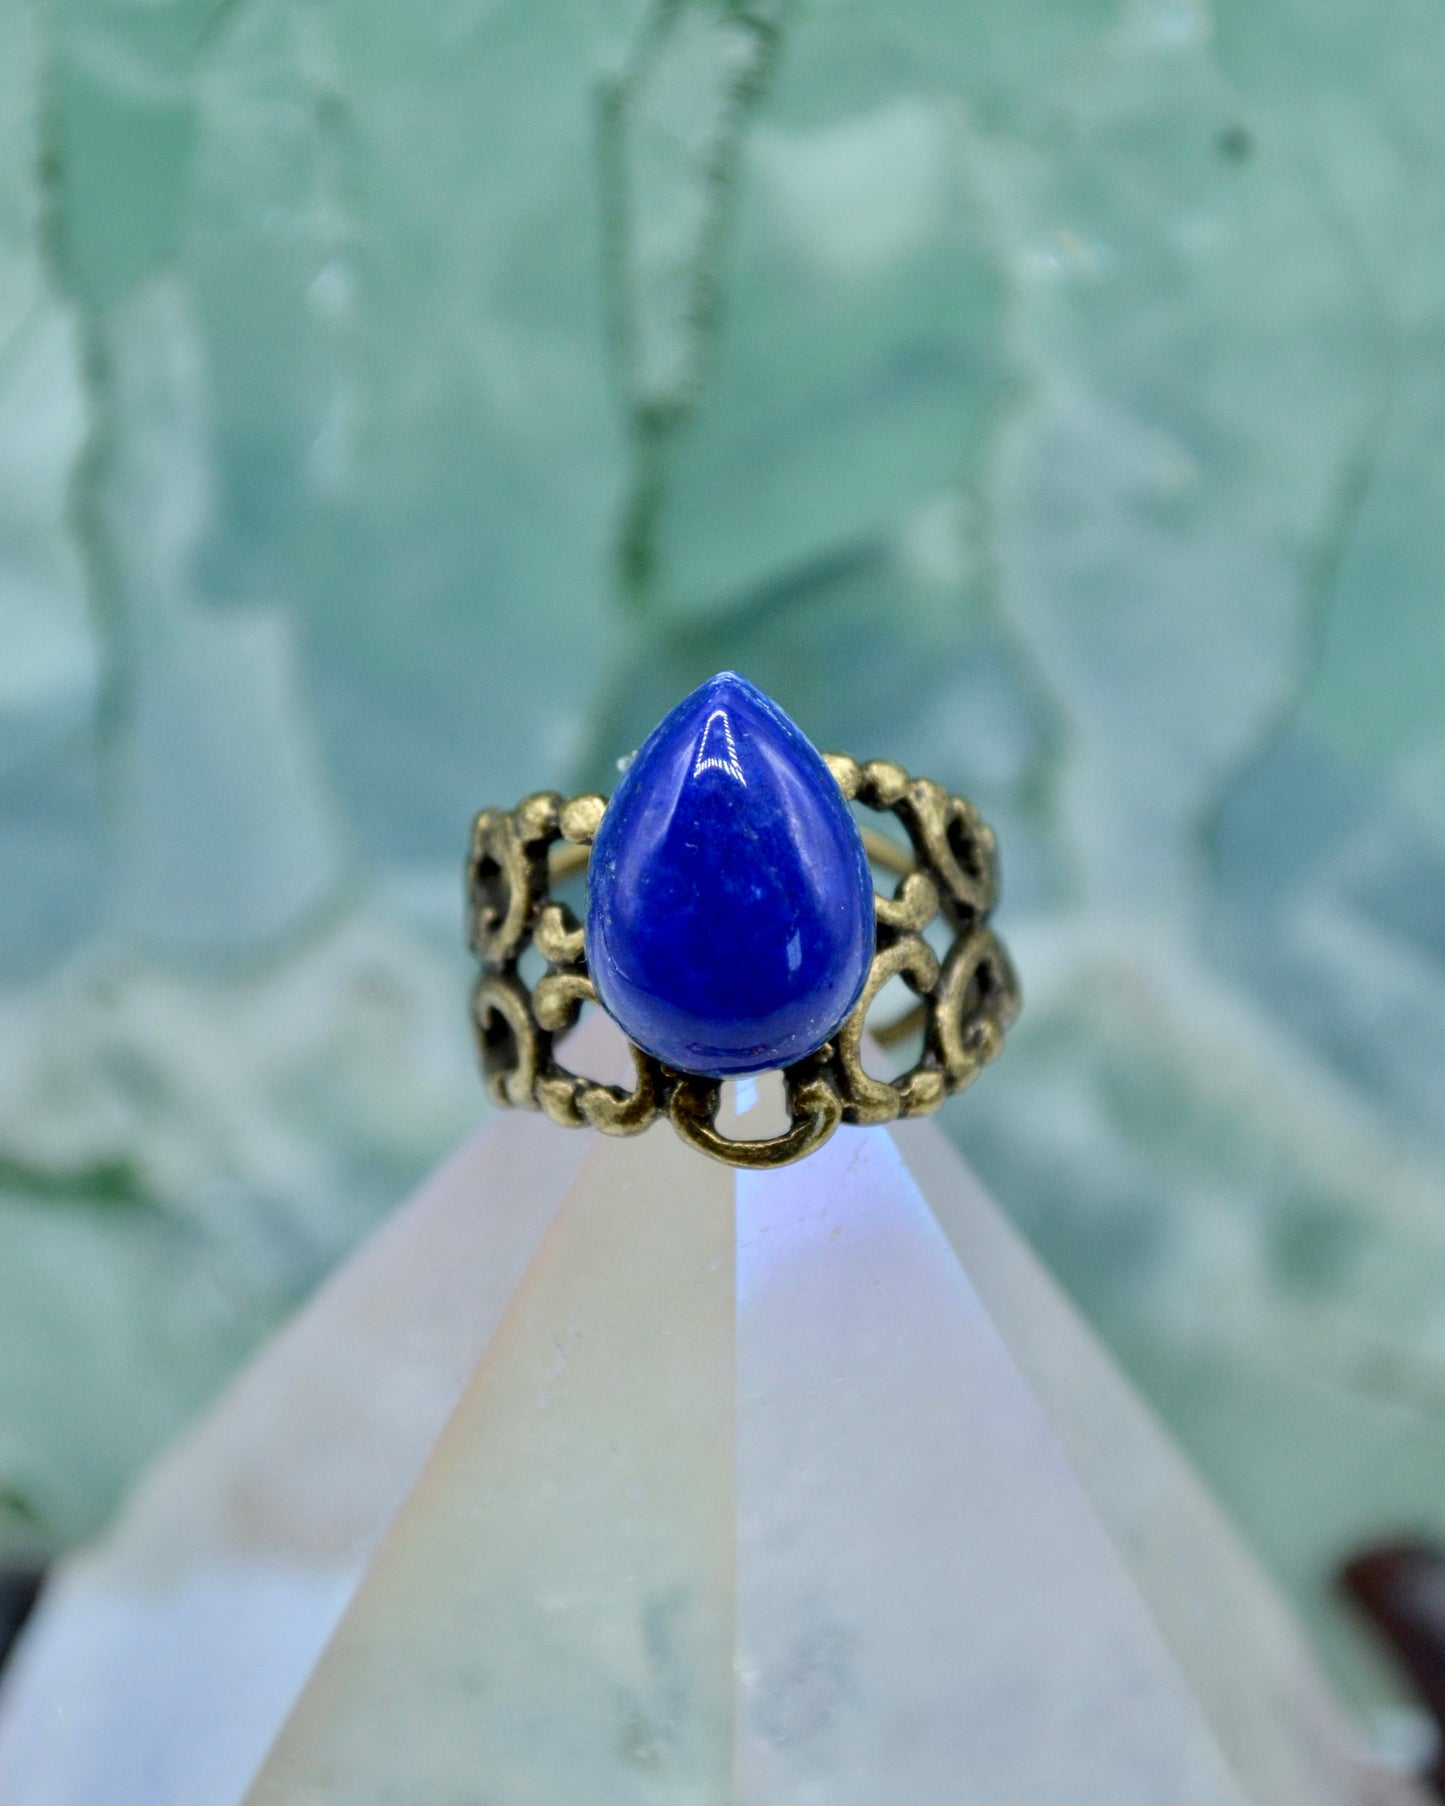 Lapis Lazuli Adjustable Ring